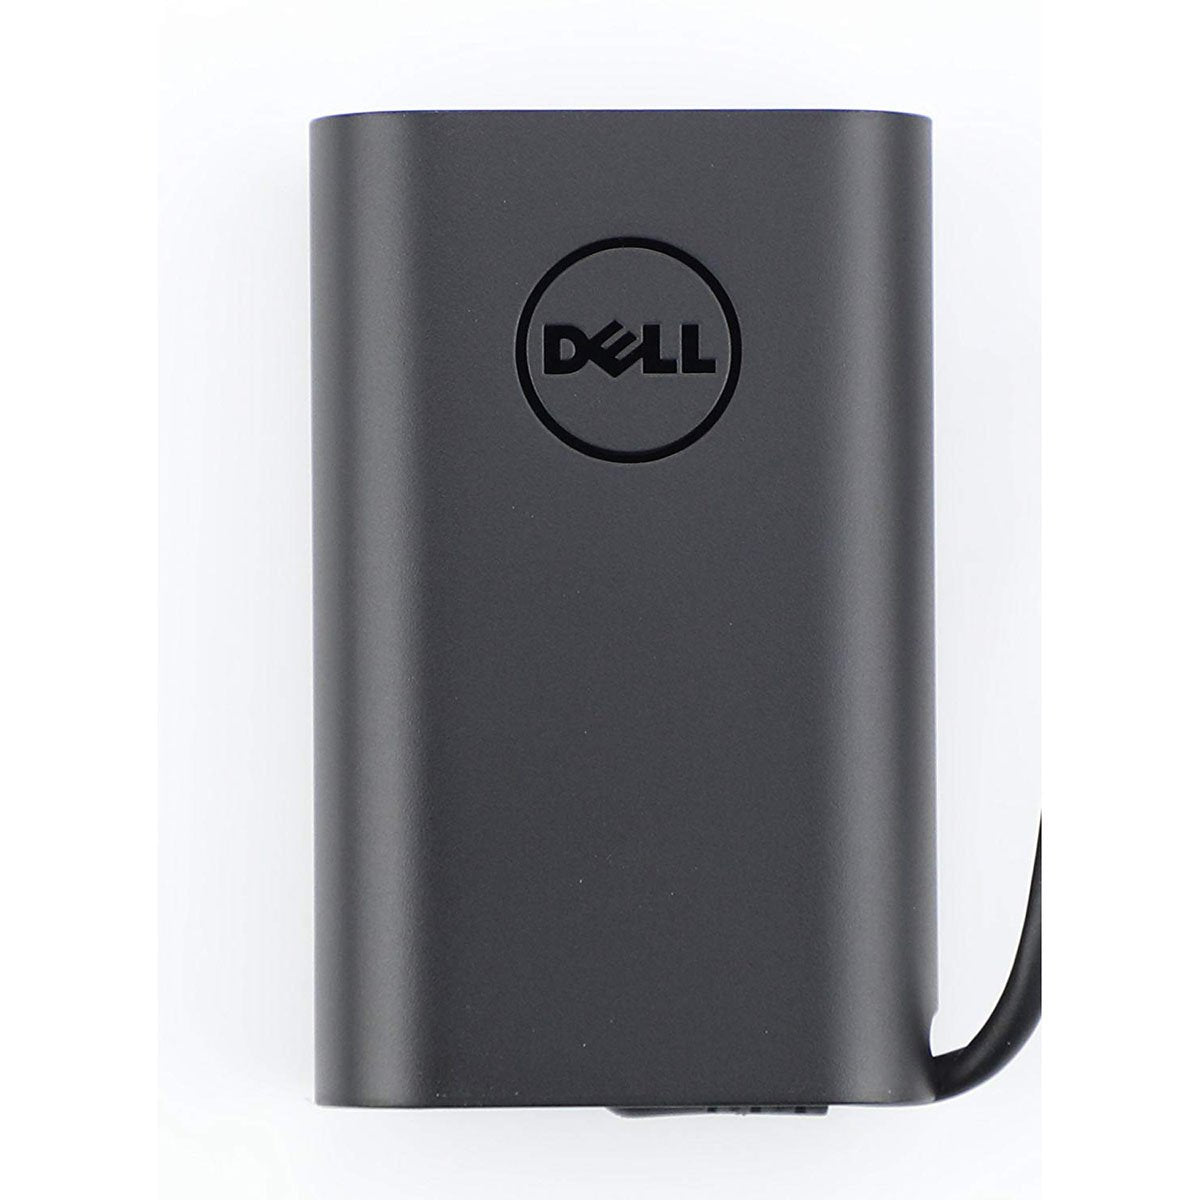 Dell ओरिजिनल 45W 20V USB टाइप C लैपटॉप चार्जर अडैप्टर XPS 12 9250 के लिए पावर कॉर्ड के साथ